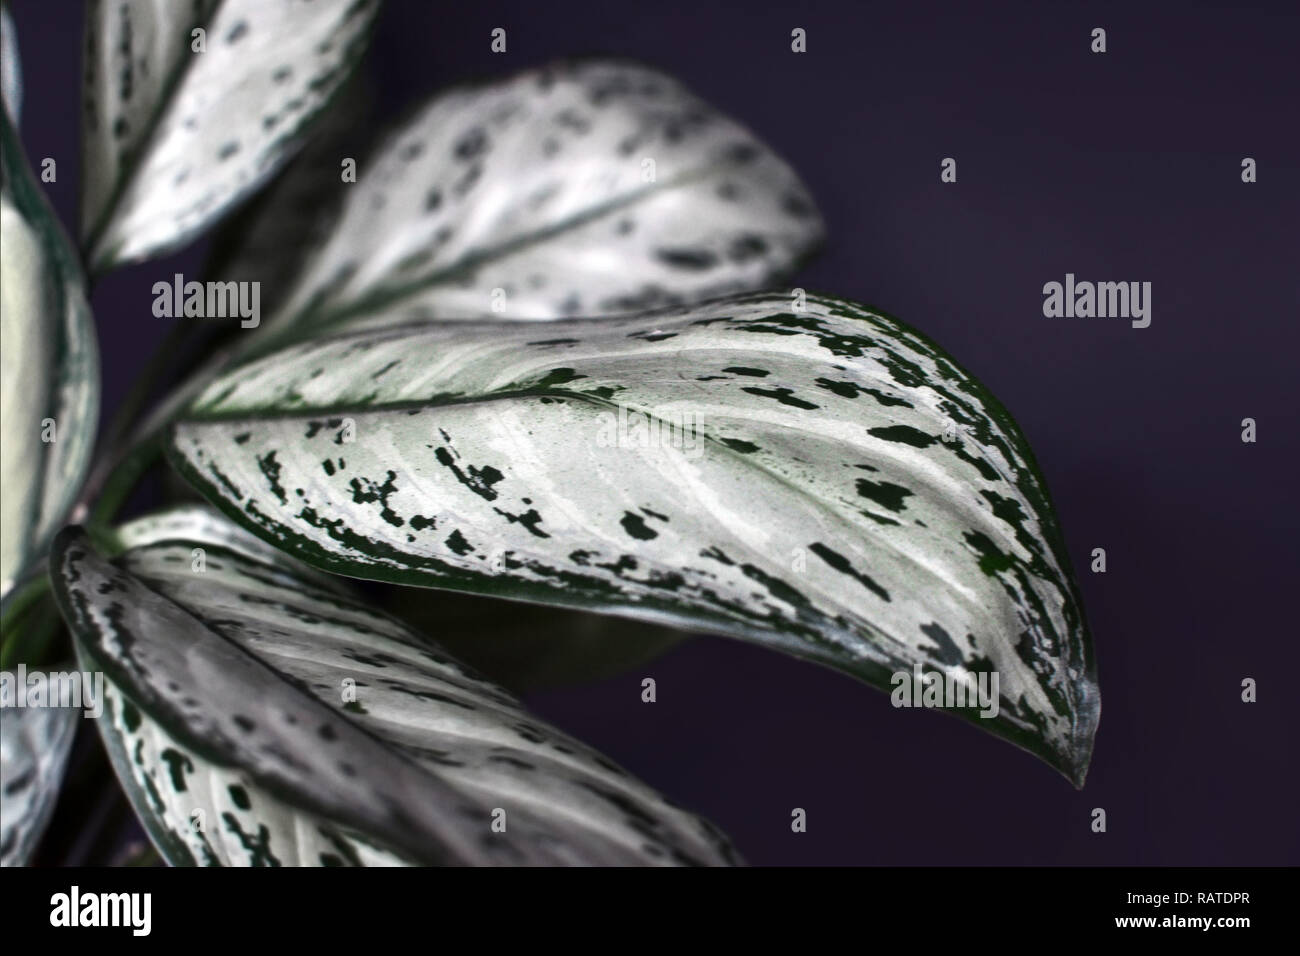 Gros plan d'une plante tropicale Agaonema Silver Bay avec de belles feuilles panachées sur fond sombre Banque D'Images